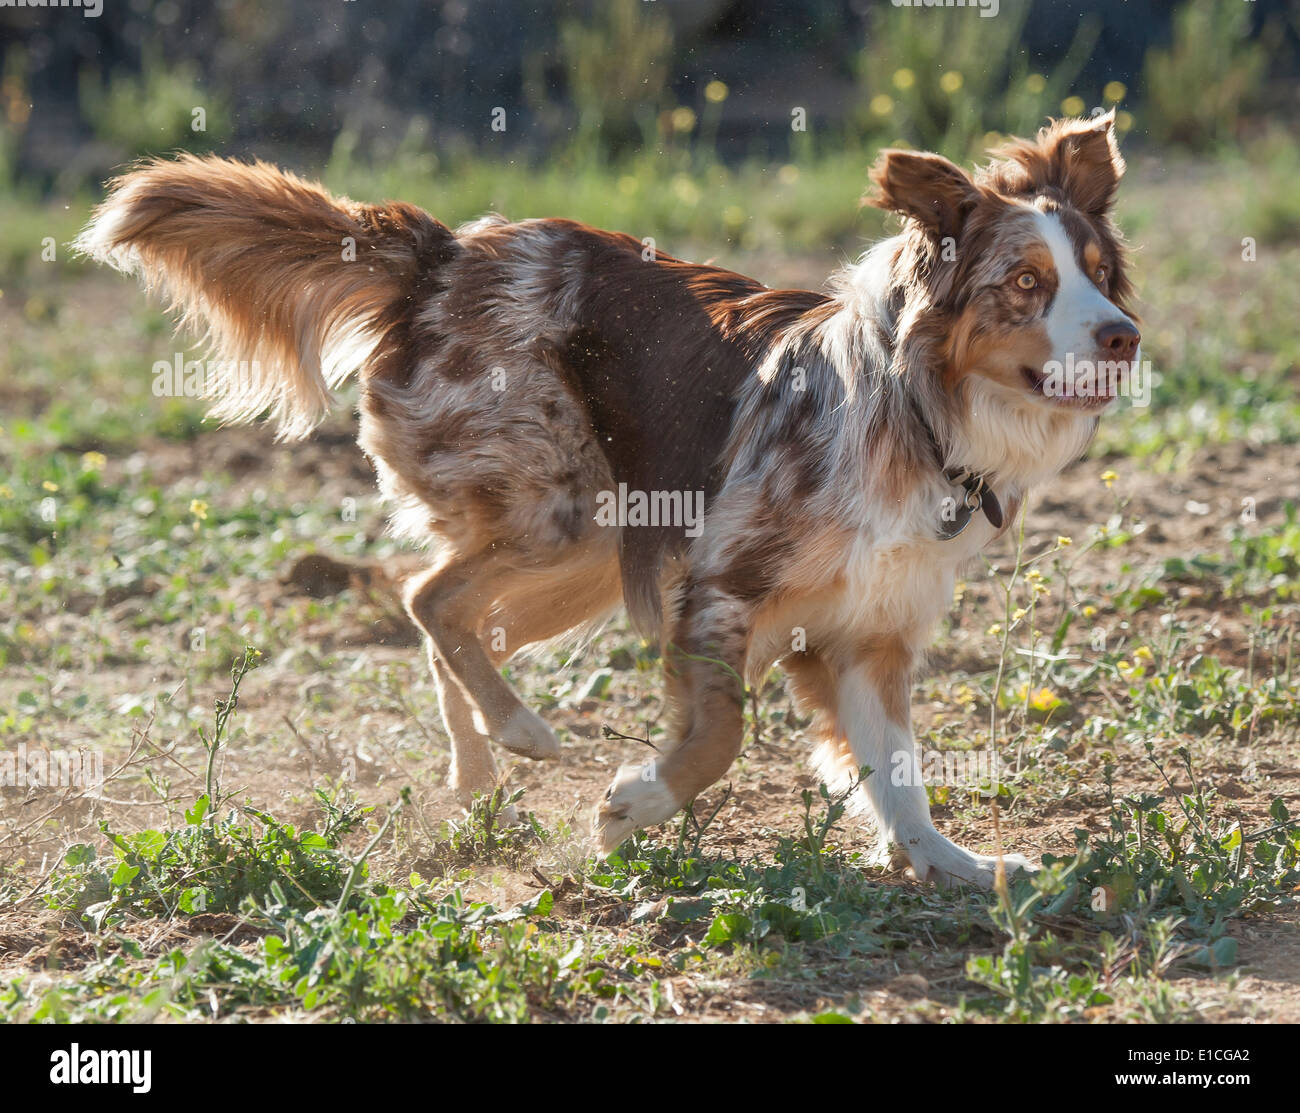 australian cattle dog cross border collie